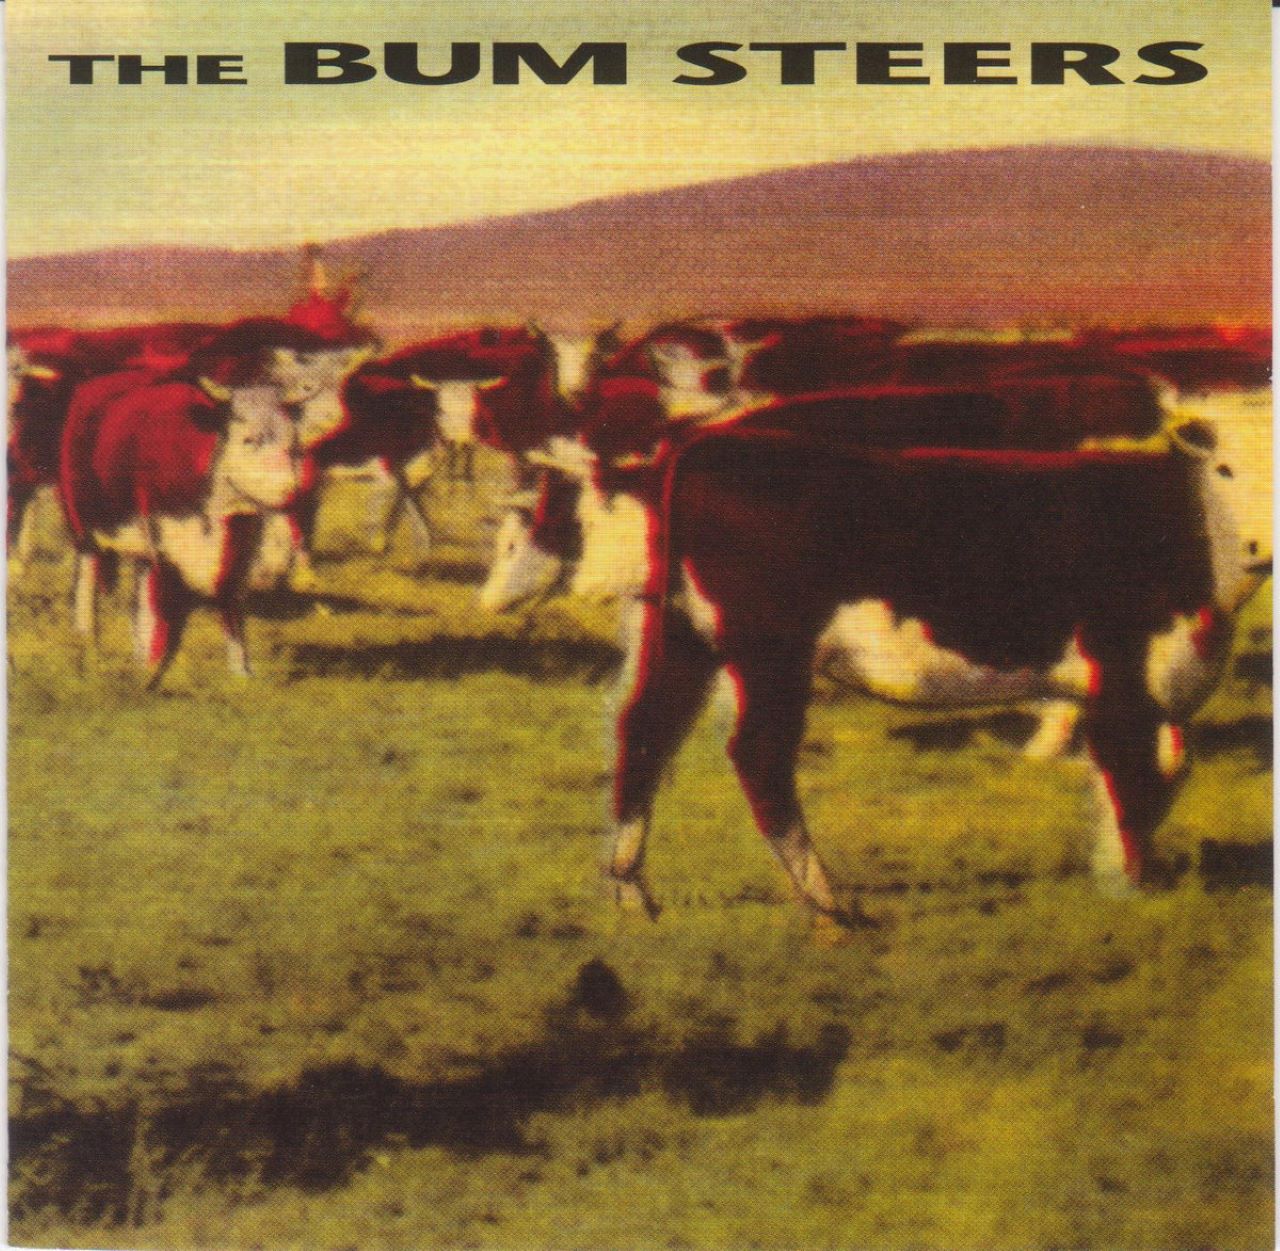 Bum Steers – The Bum Steers cover album